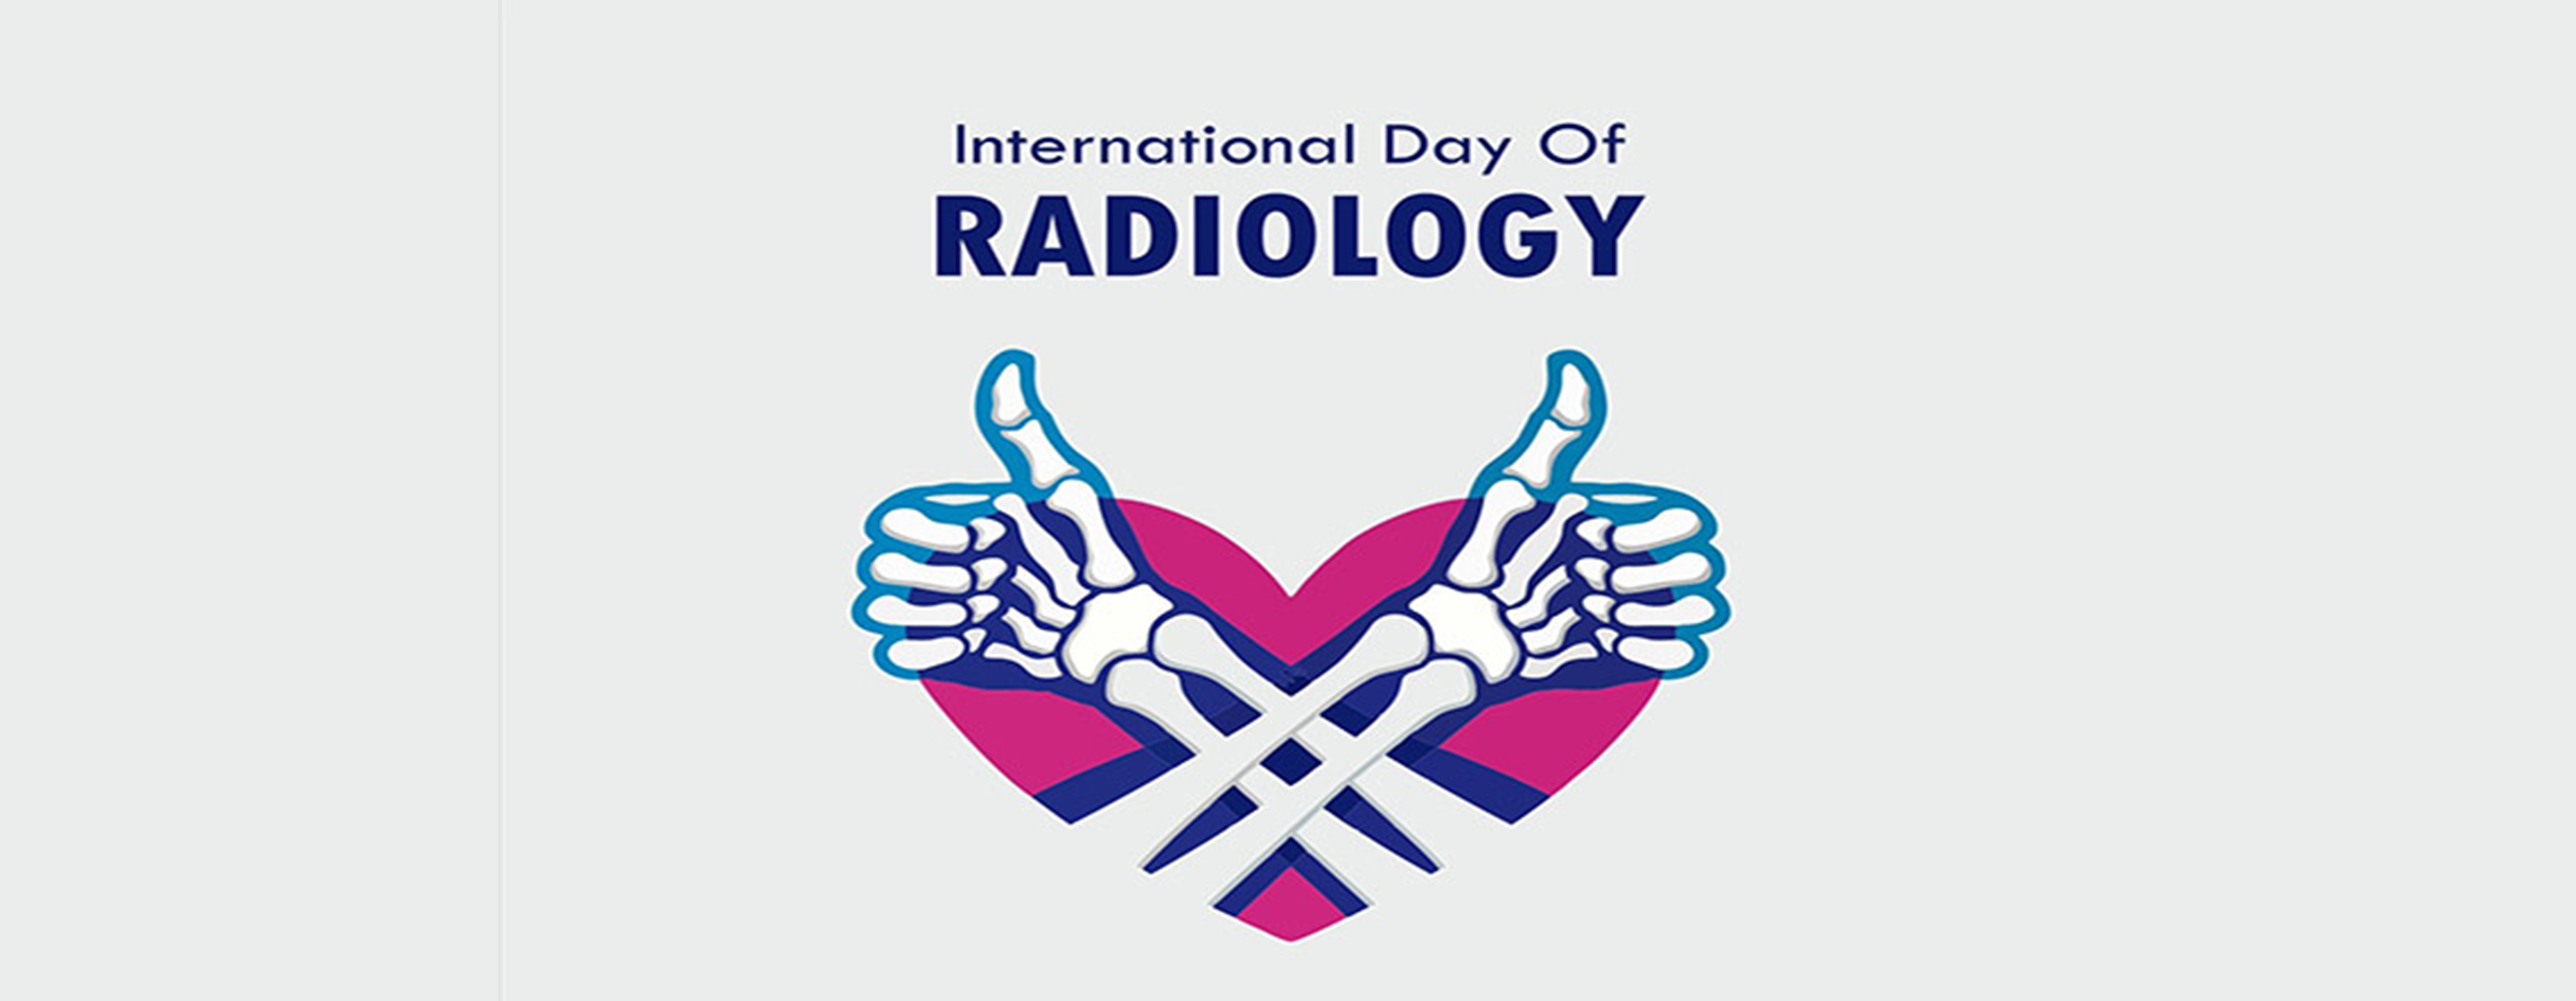 17 آبان روز جهانی رادیولوژی